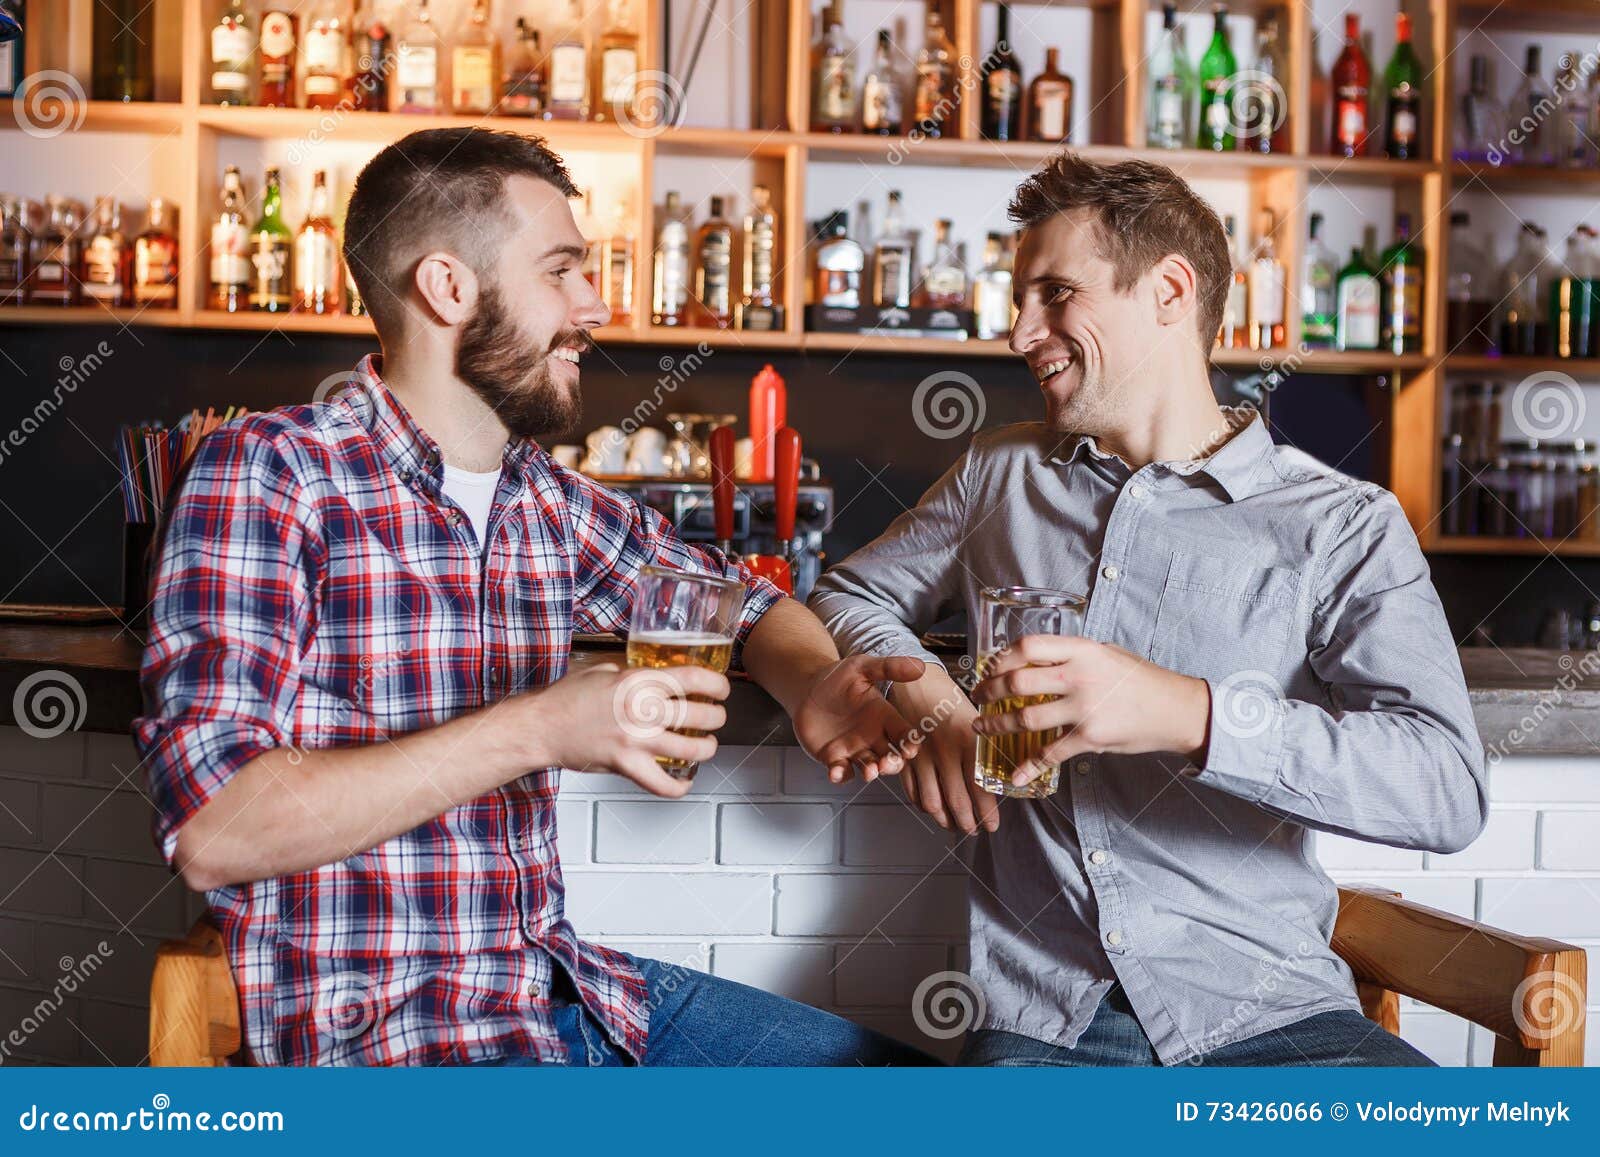 Что пьют в баре. Два мужчины в баре. Два мужика в баре. Мужчина пьет пиво в баре. 2 Парня в баре.